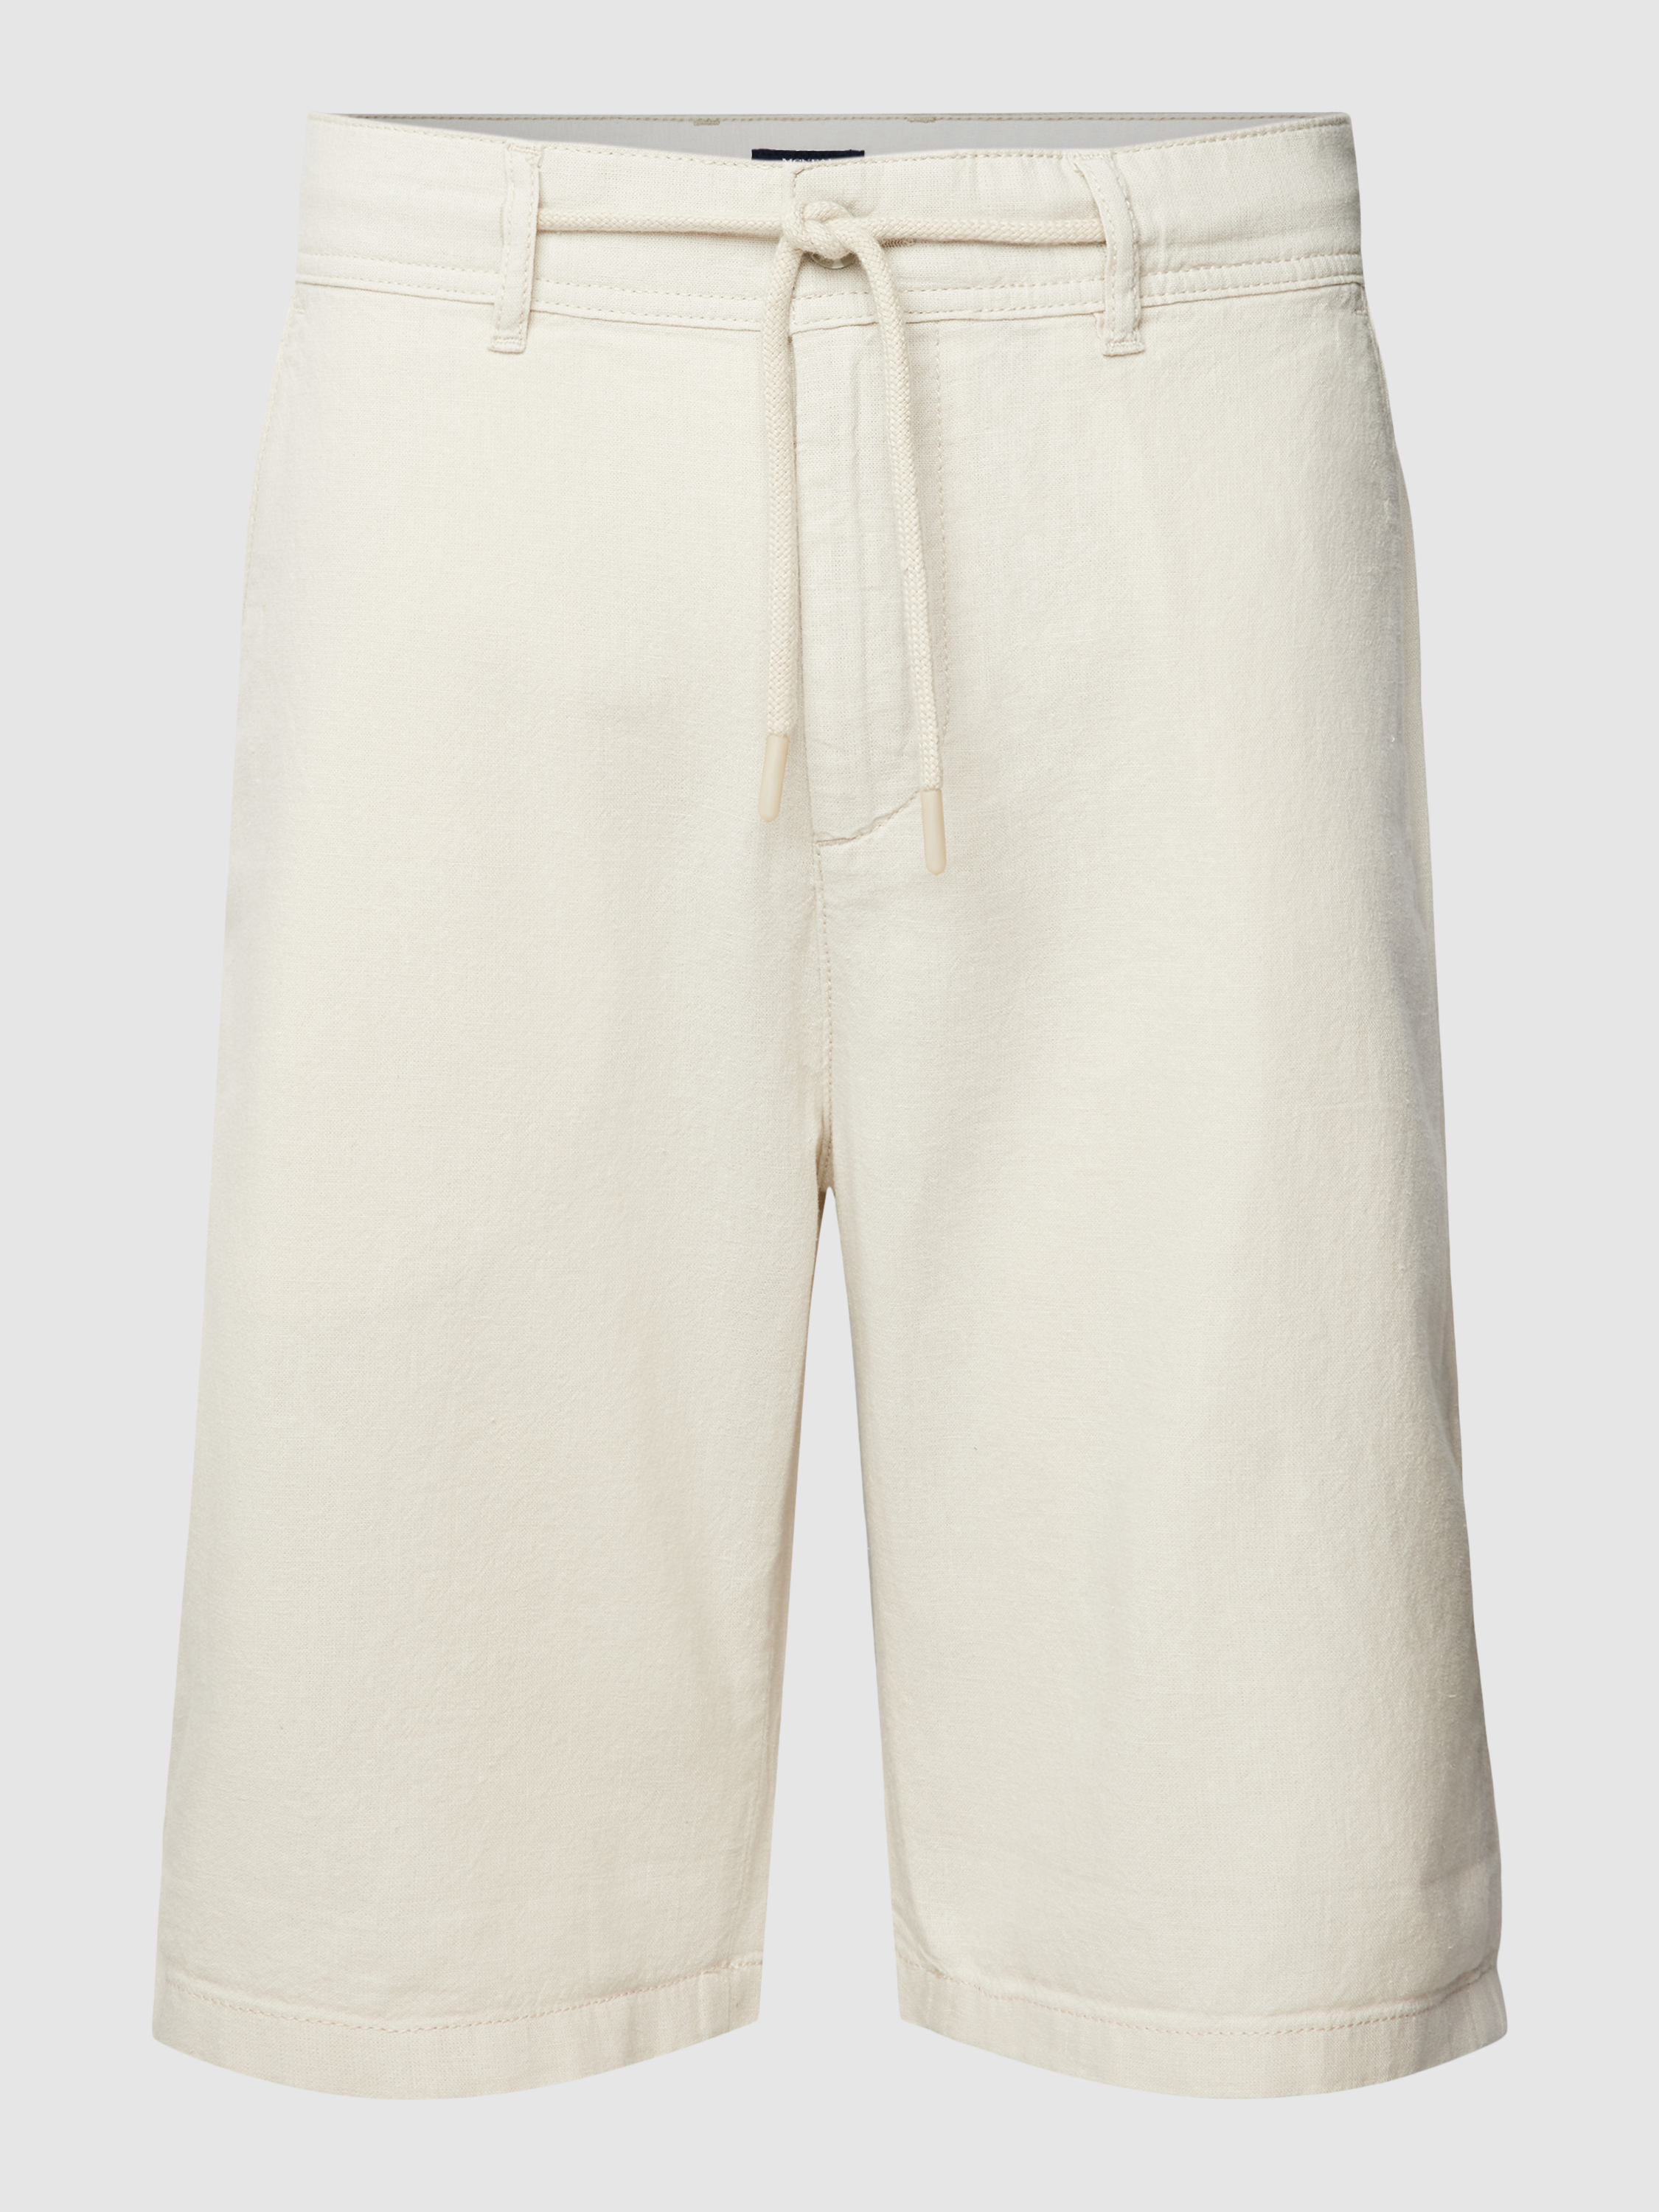 Повседневные шорты мужские McNeal 1768494 белые M (доставка из-за рубежа)